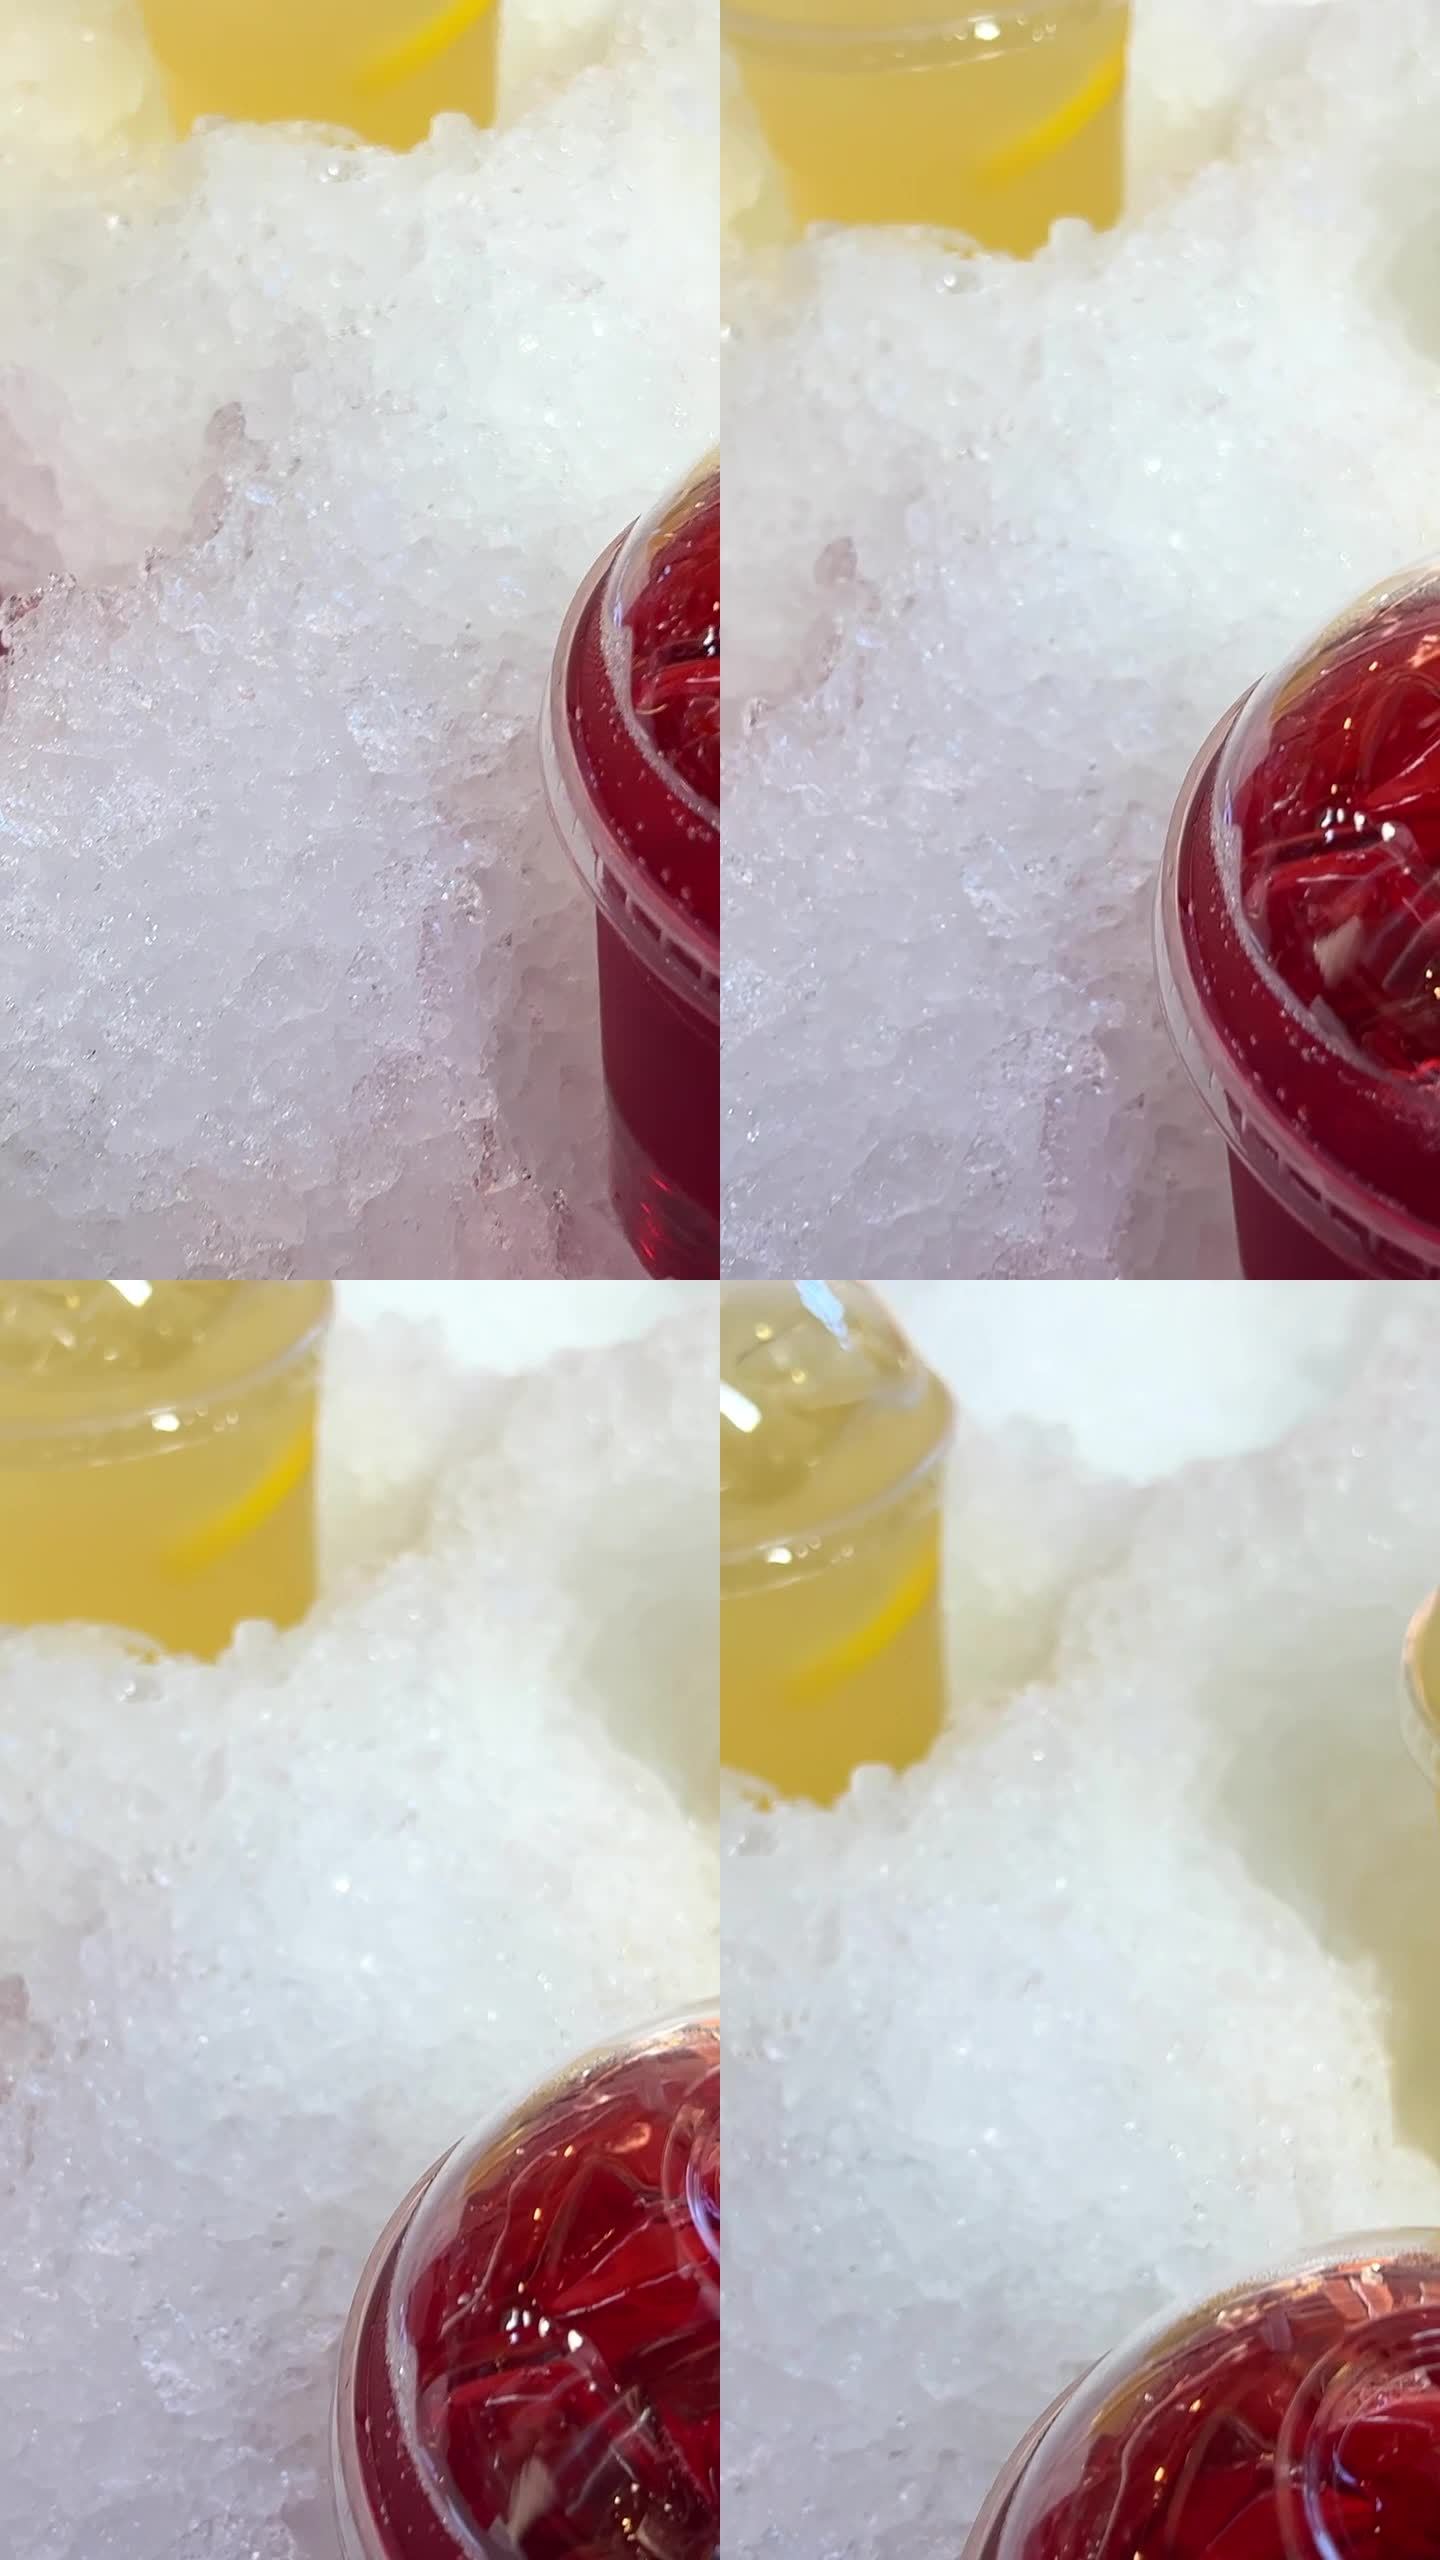 在市场上出售的黄色和红色的塑料杯饮料放在冰樱桃或覆盆子饮料和柠檬慕斯方便的人造雪，防止饮料变冷